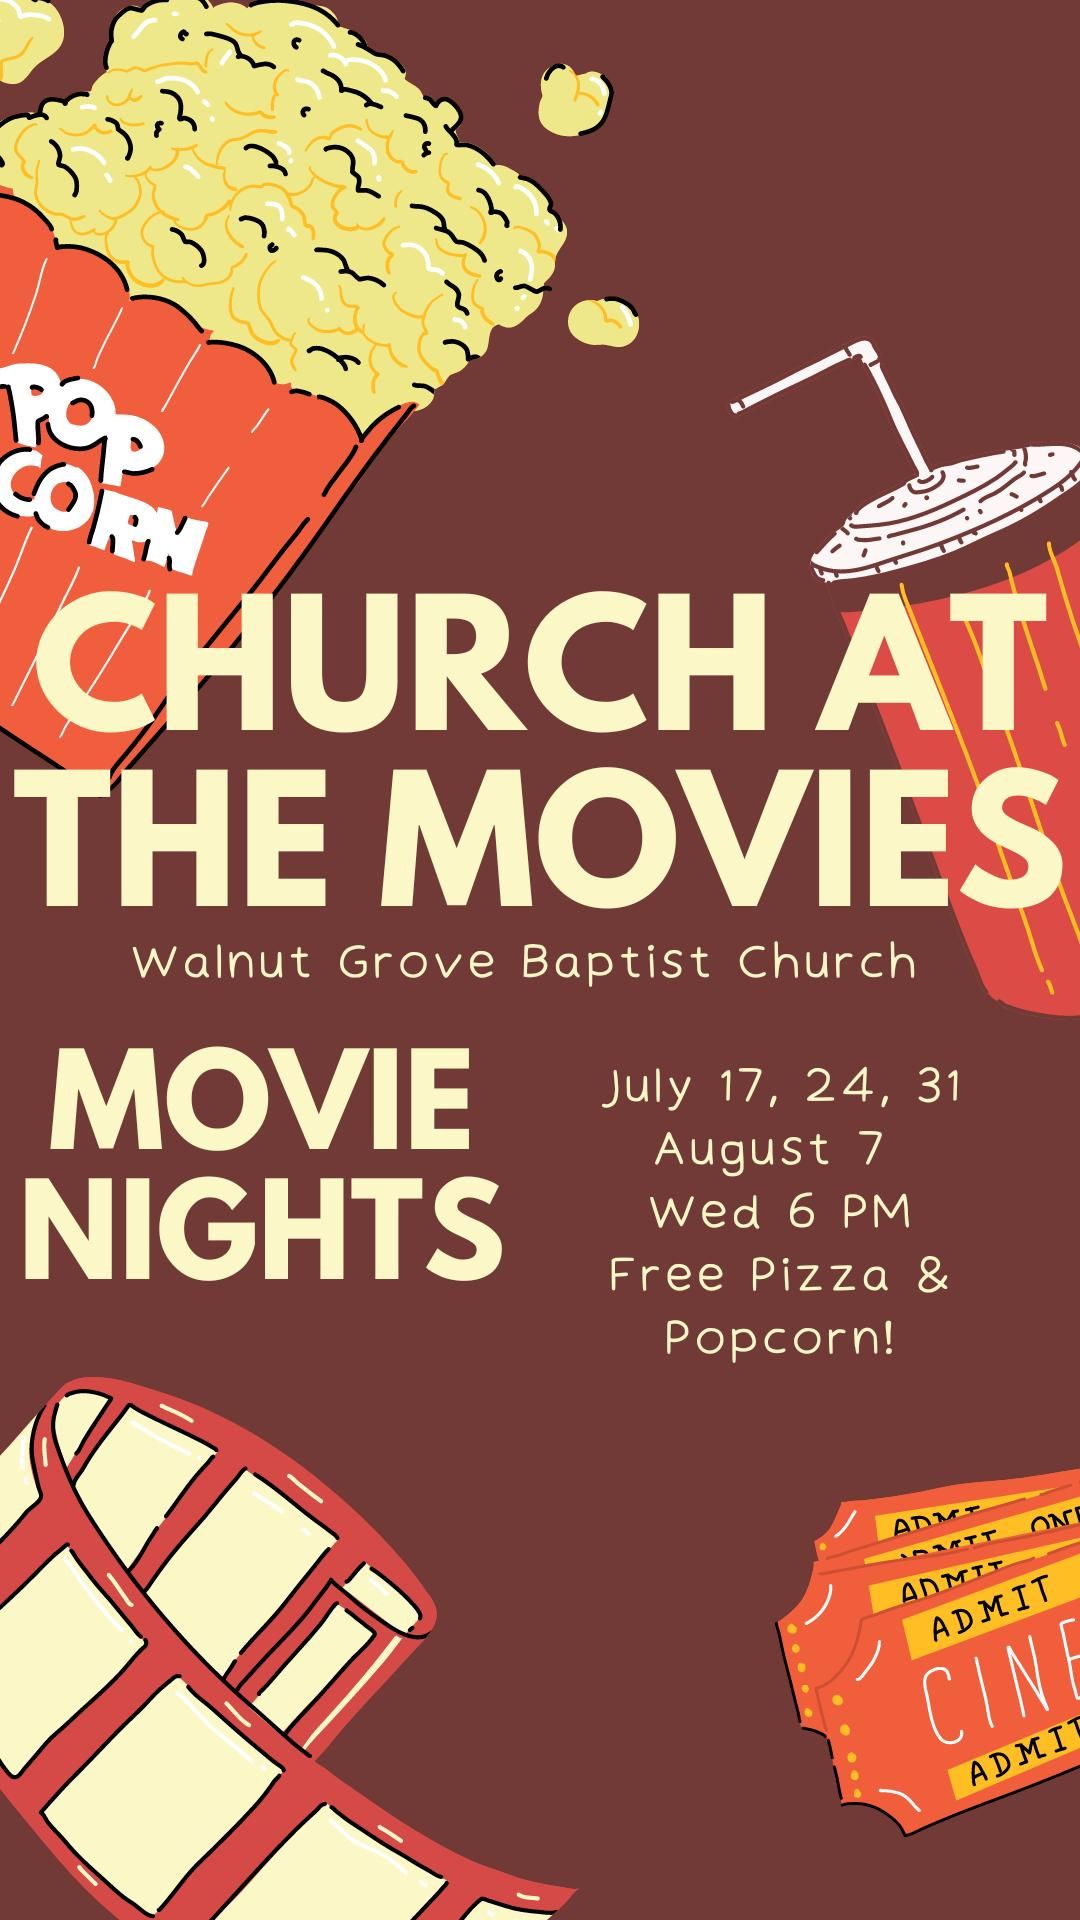 Church At The Movies!